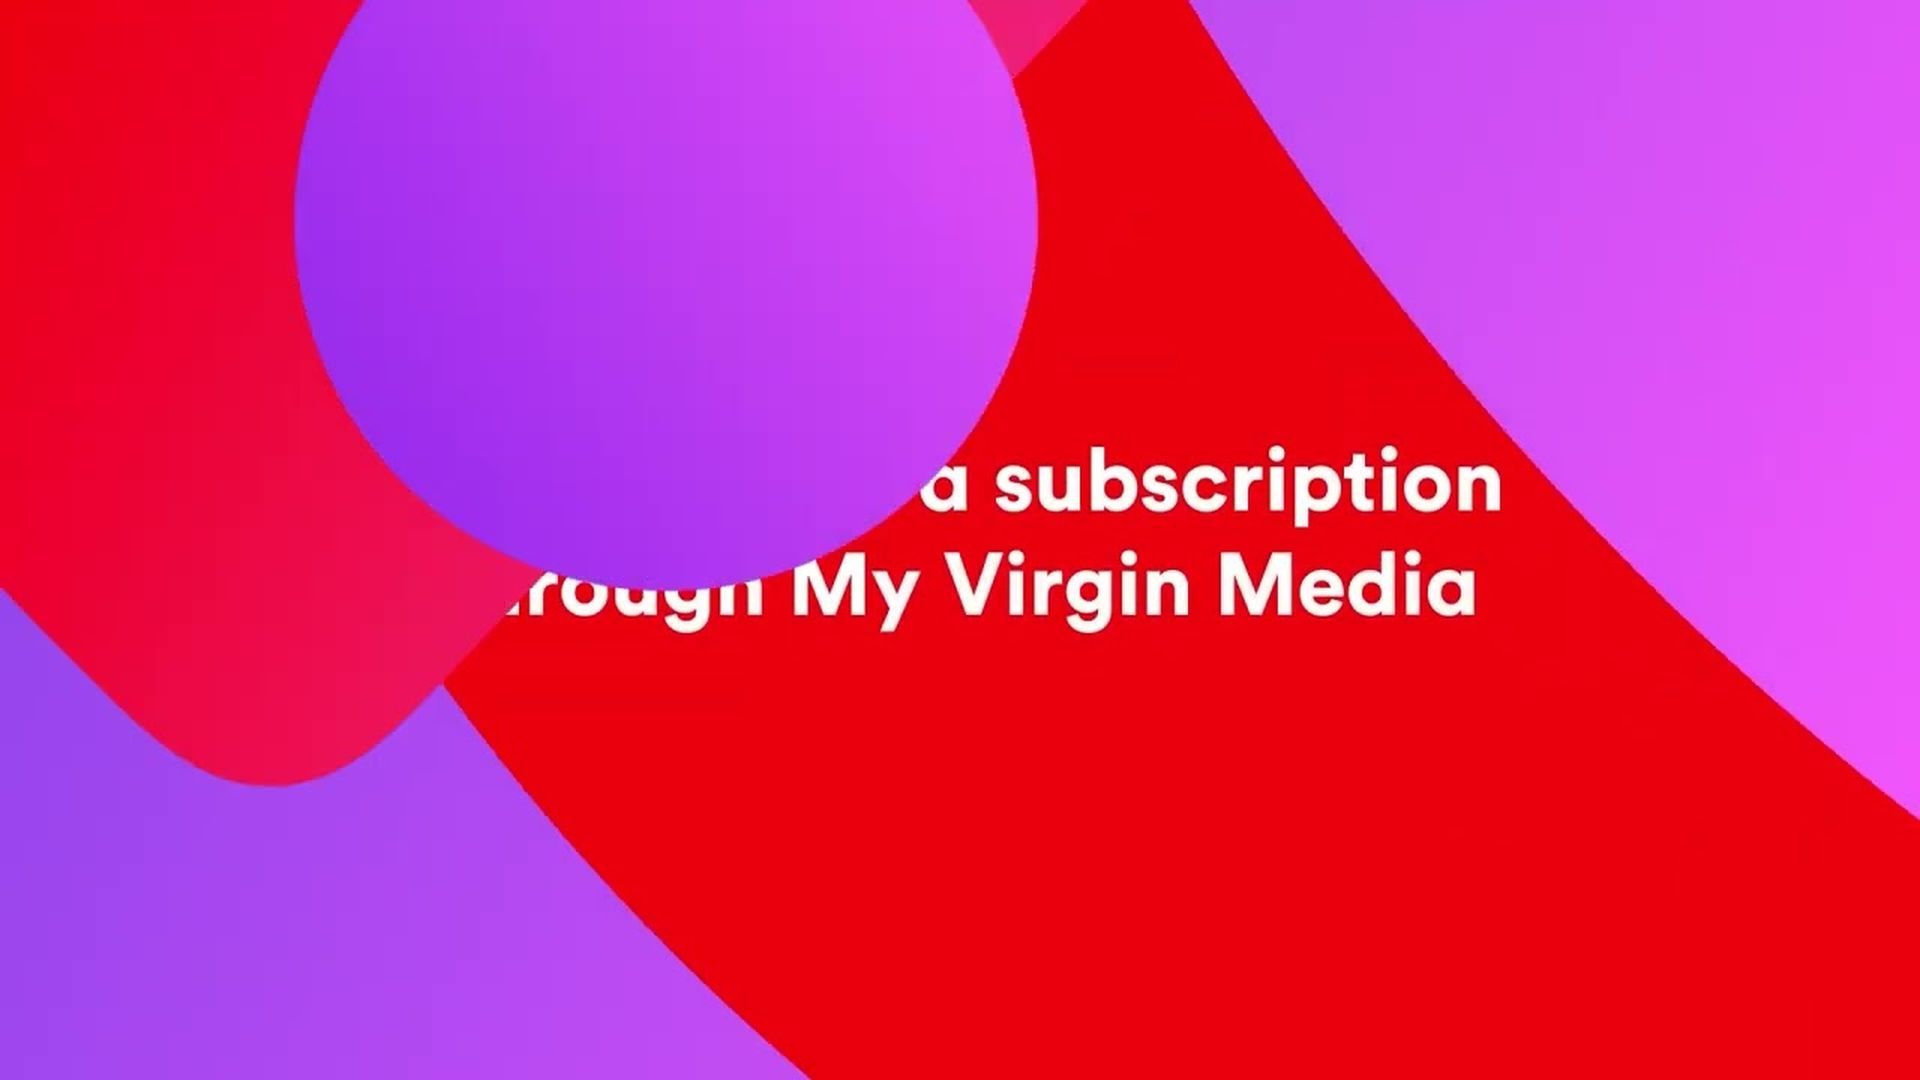 E-mail da Virgin Media não funciona 